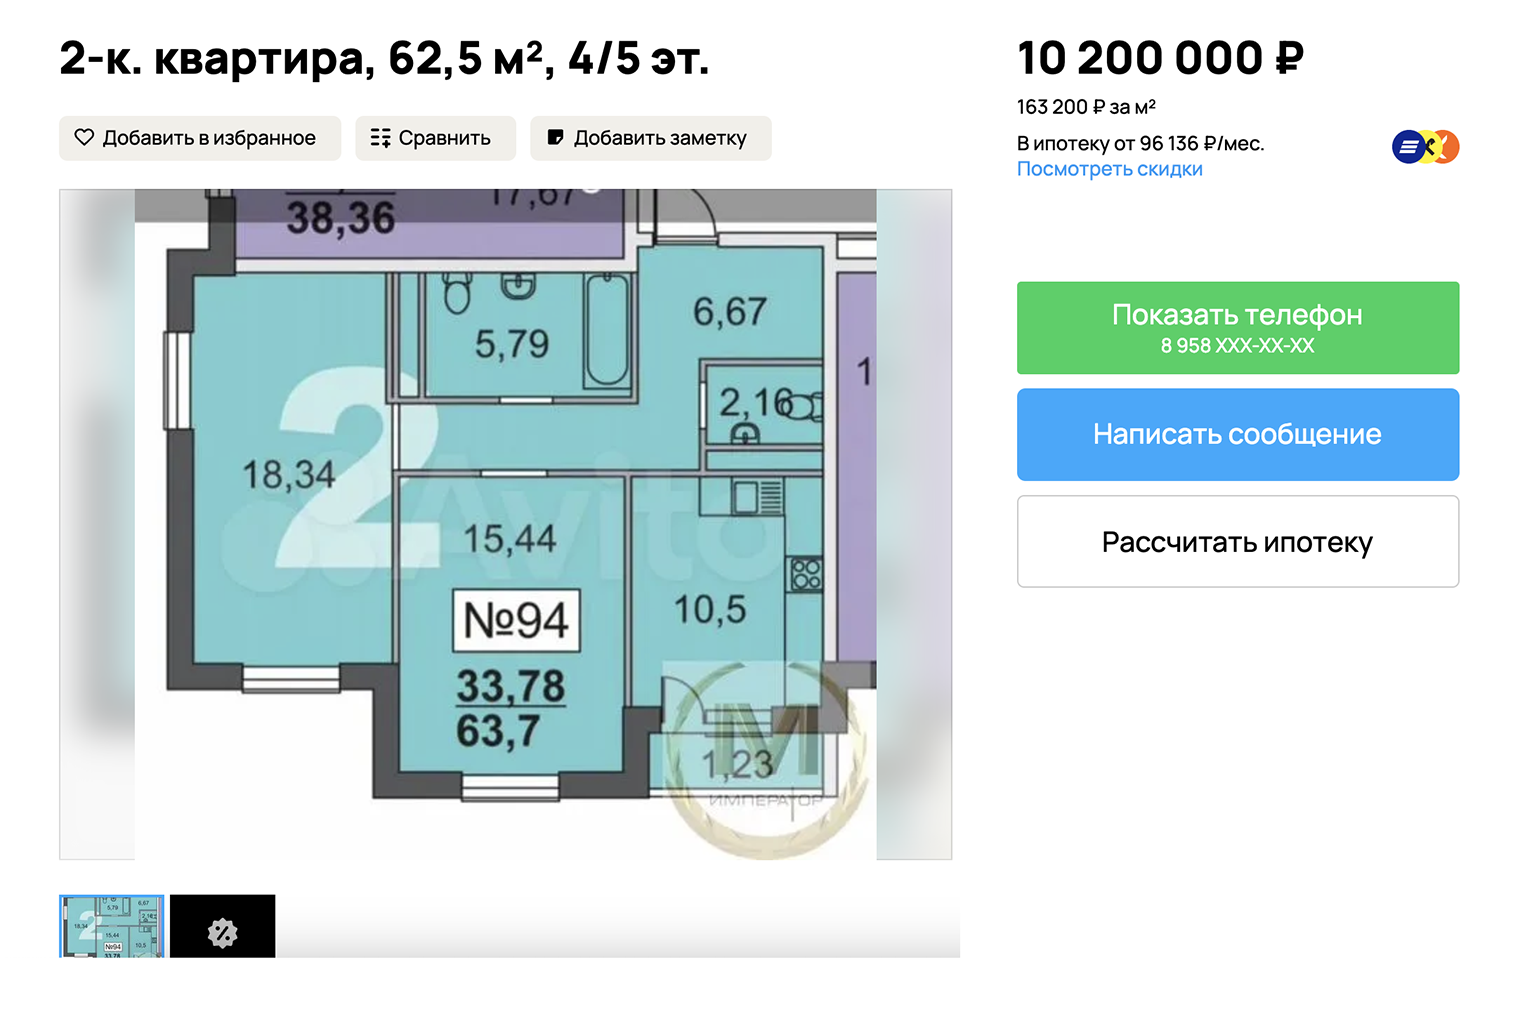 Квартира без отделки и не в очень удобном месте. Проще за эти же деньги взять квартиру на вторичке в доме середины нулевых. Источник: avito.ru